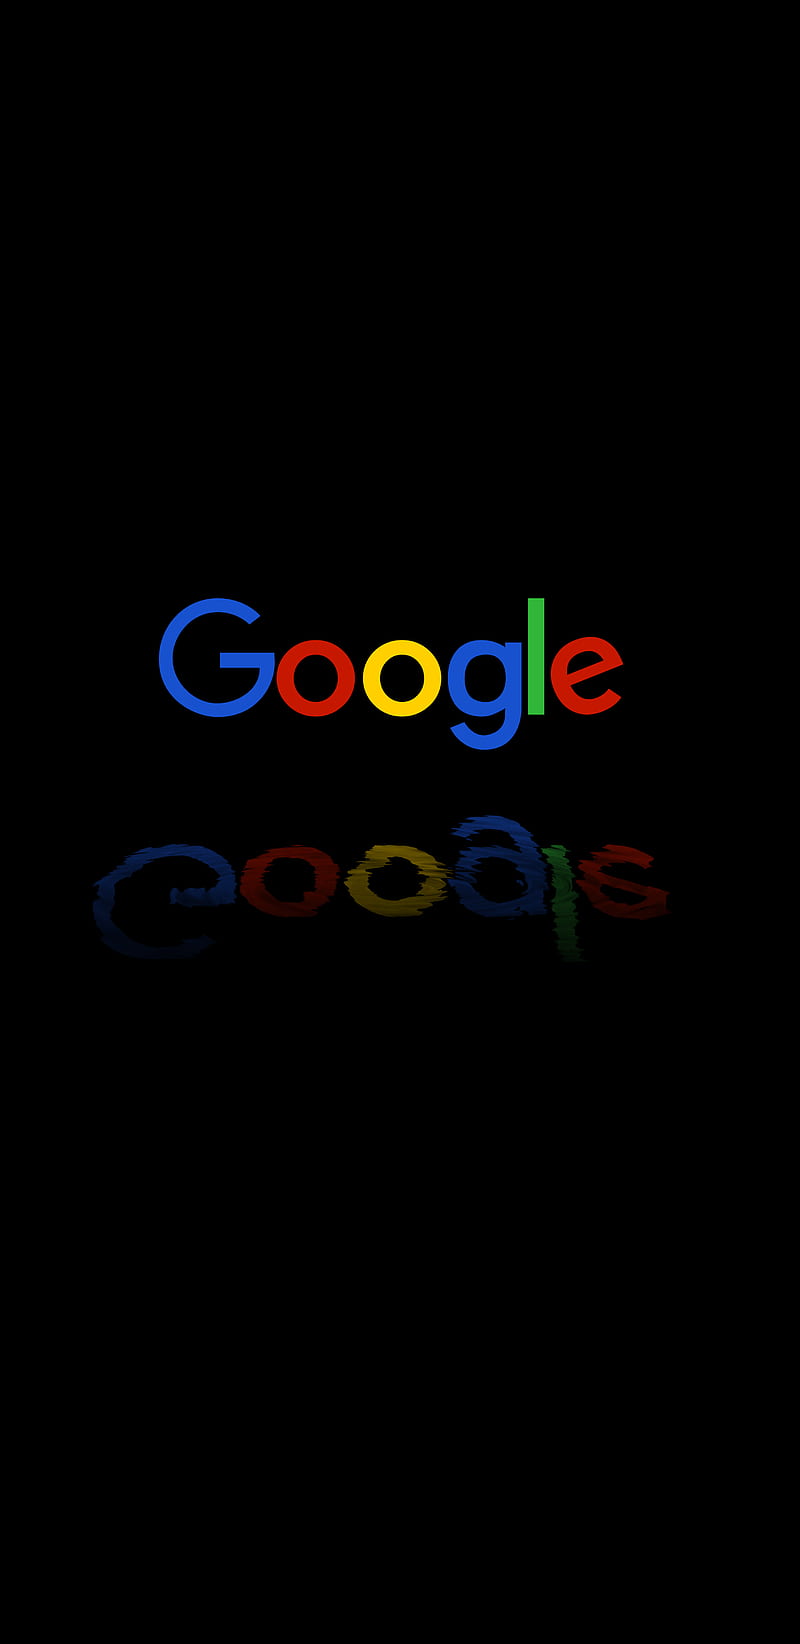 Google Logo Wallpaper Hd For Mobile - Infoupdate.org